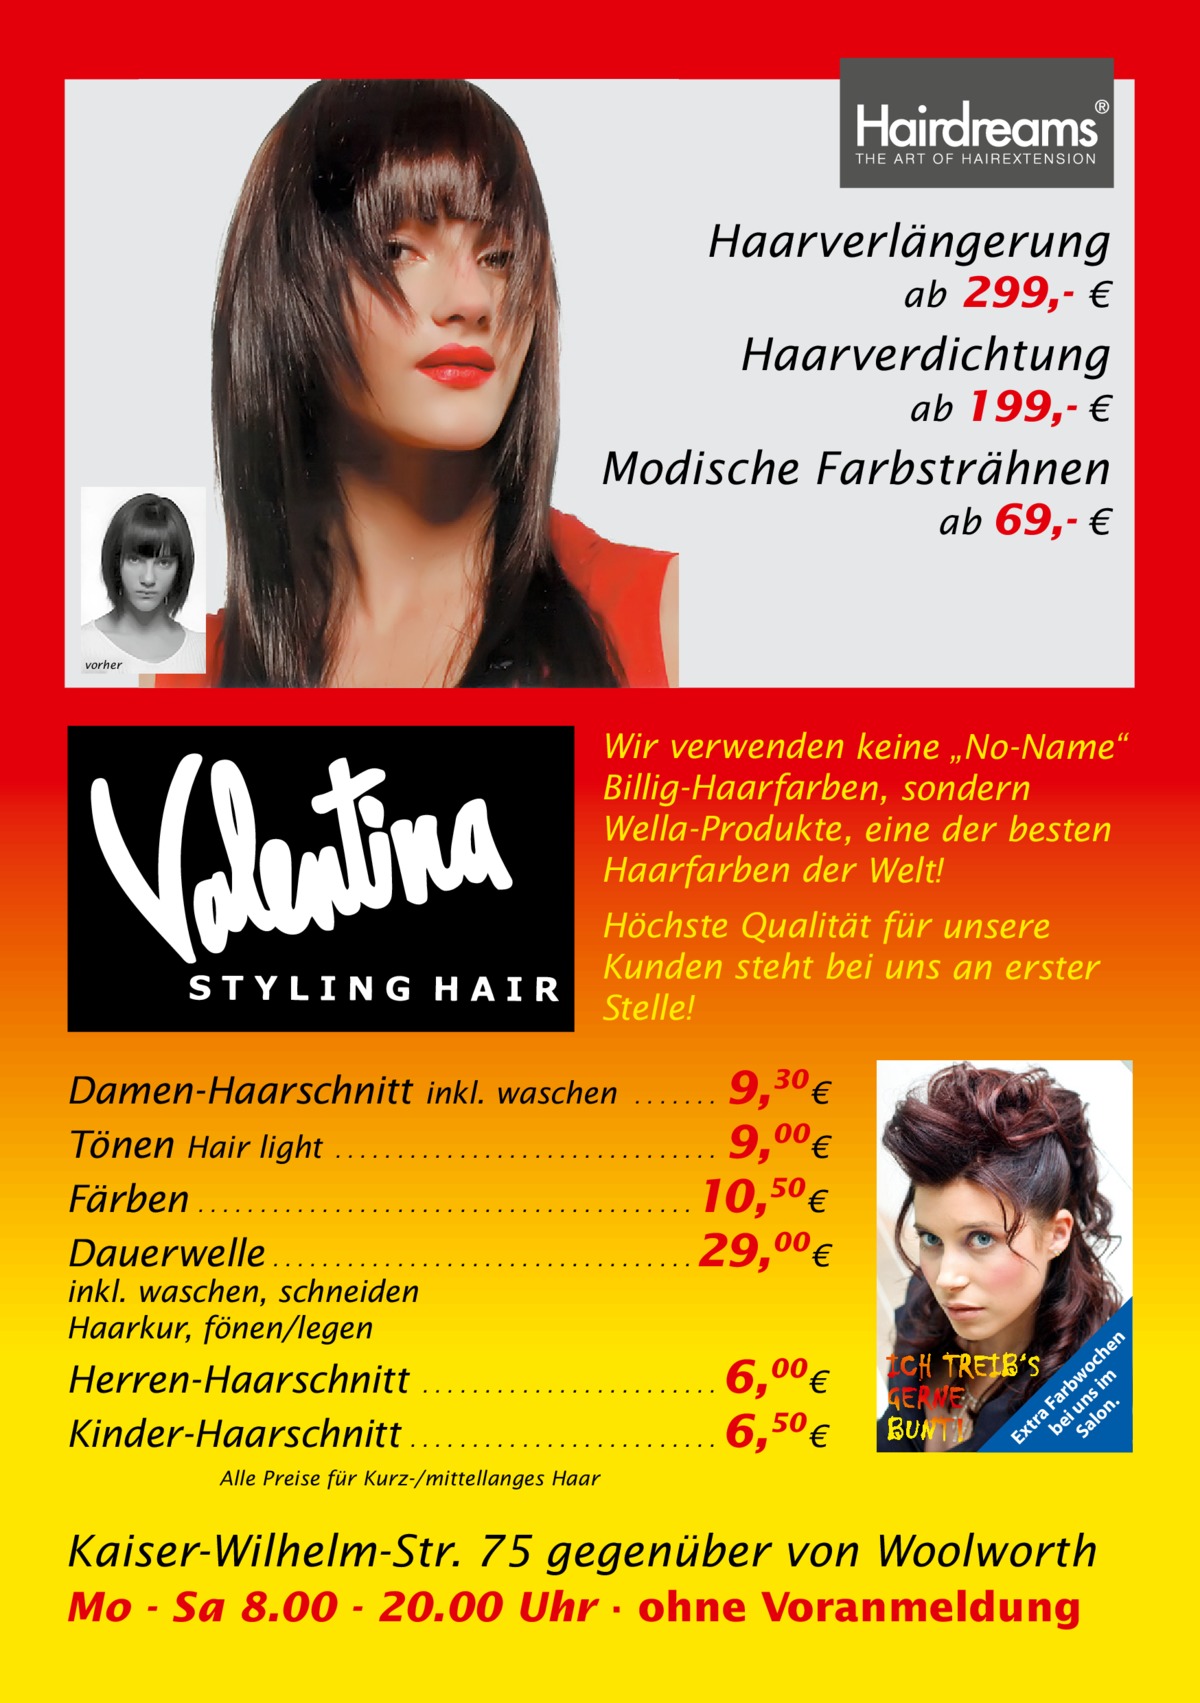 Haarverlängerung ab 299,- €  Haarverdichtung ab 199,- €  Modische Farbsträhnen ab 69,- €  vorher  Wir verwenden keine „No-Name“ Billig-Haarfarben, sondern Wella-Produkte, eine der besten Haarfarben der Welt! Höchste Qualität für unsere Kunden steht bei uns an erster Stelle!  Herren-Haarschnitt . . . . . . . . . . . . . . . . . . . . . . . . 6,00€ Kinder-Haarschnitt . . . . . . . . . . . . . . . . . . . . . . . . . 6,50 €  Ex  inkl. waschen, schneiden Haarkur, fönen/legen  tr a be Fa i rb Sa un wo lo s im ch n. en  Damen-Haarschnitt inkl. waschen . . . . . . . 9,30 € Tönen Hair light . . . . . . . . . . . . . . . . . . . . . . . . . . . . . . . 9,00€ Färben . . . . . . . . . . . . . . . . . . . . . . . . . . . . . . . . . . . . . . . . 10,50 € Dauerwelle . . . . . . . . . . . . . . . . . . . . . . . . . . . . . . . . . . 29,00€  Alle Preise für Kurz-/mittellanges Haar  Kaiser-Wilhelm-Str. 75 gegenüber von Woolworth Mo - Sa 8.00 - 20.00 Uhr · ohne Voranmeldung